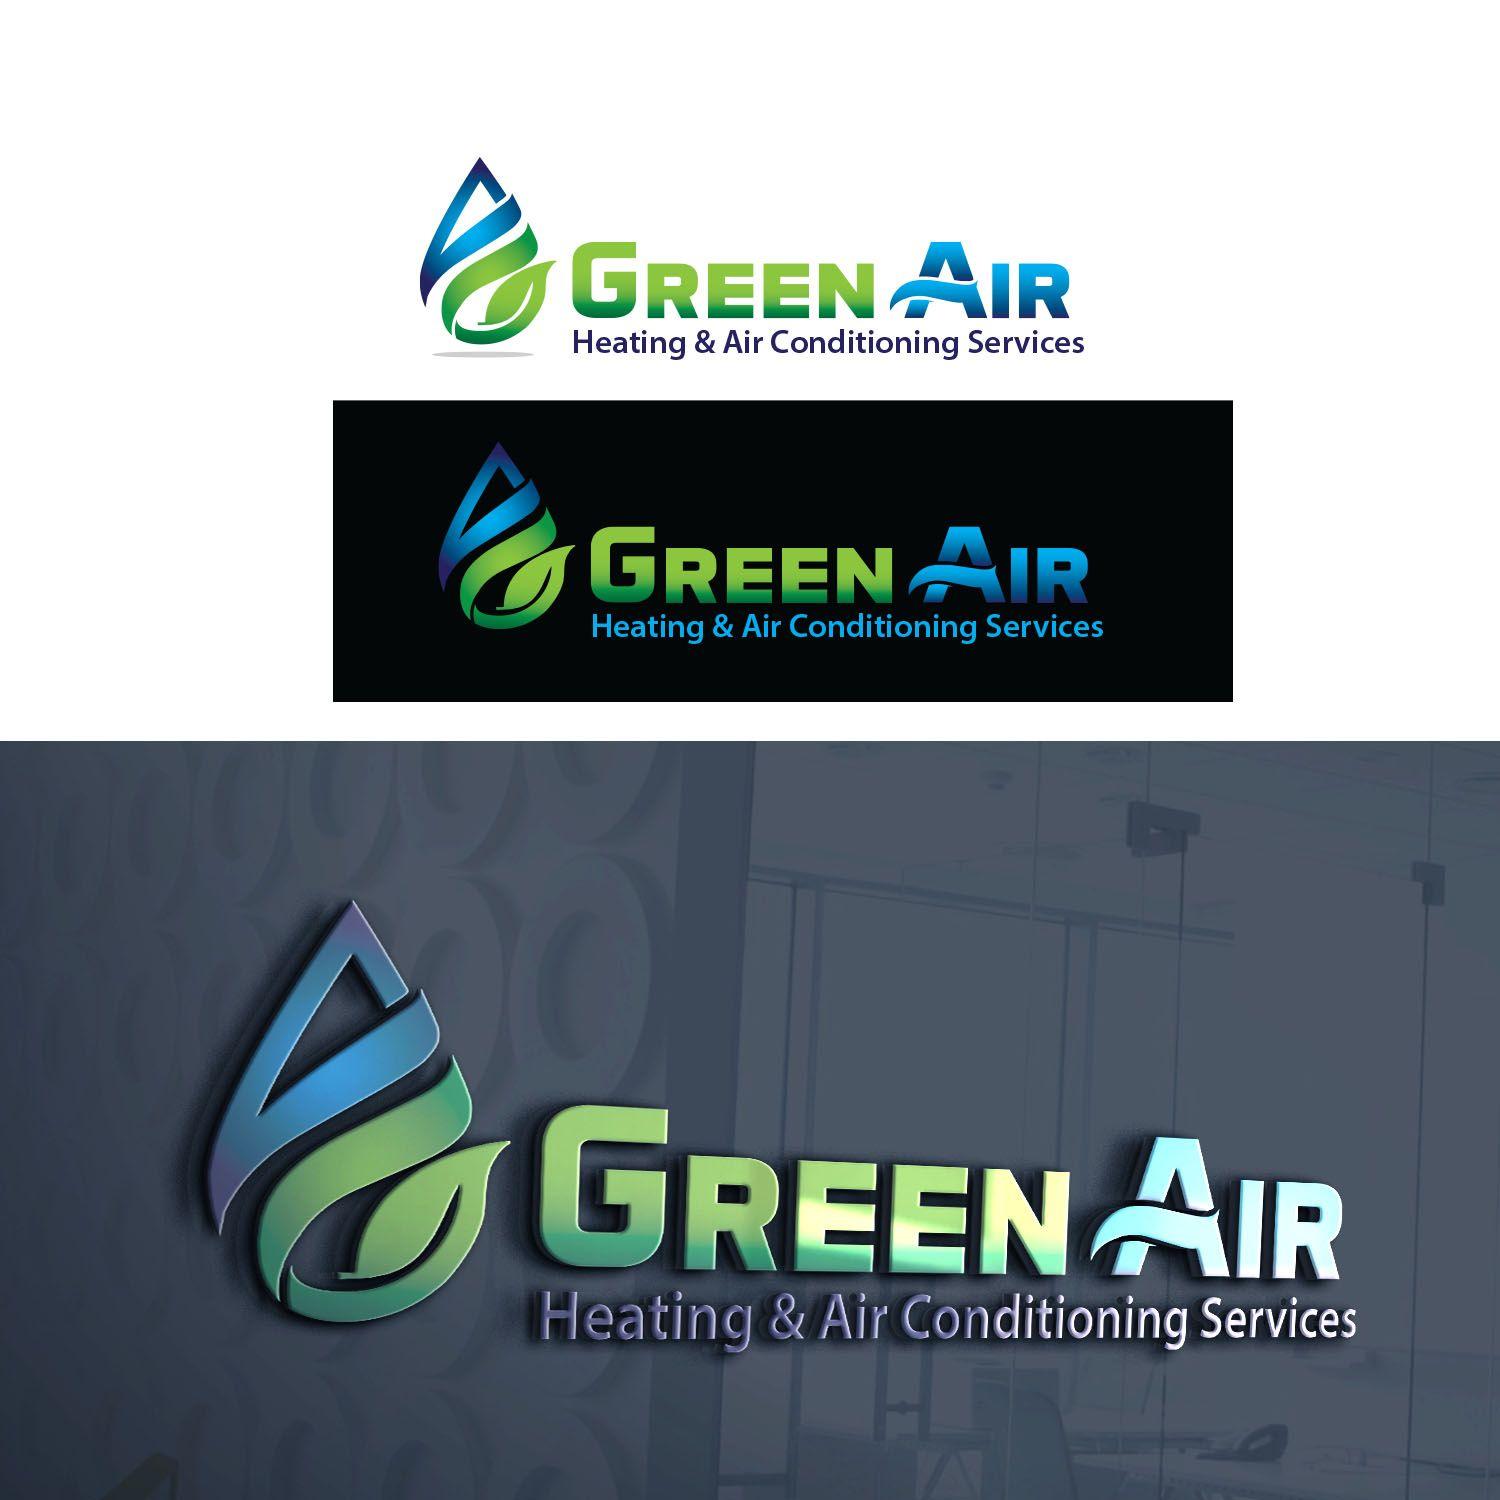 Green Air Logo - Bold, Serious, Hvac Logo Design for Green Air, Heating & Air